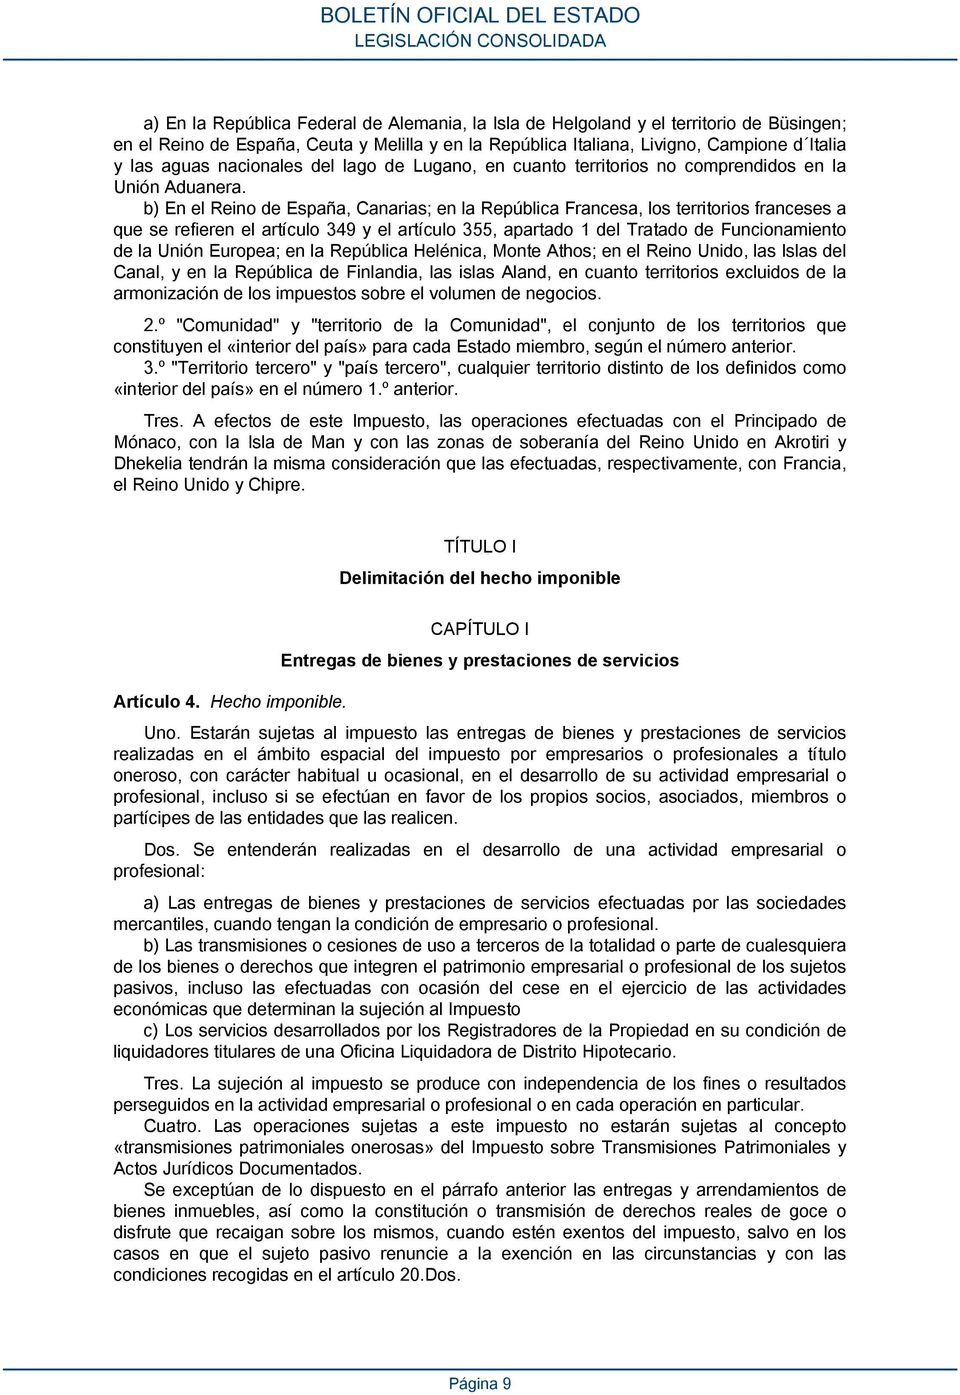 b) En el Reino de España, Canarias; en la República Francesa, los territorios franceses a que se refieren el artículo 349 y el artículo 355, apartado 1 del Tratado de Funcionamiento de la Unión